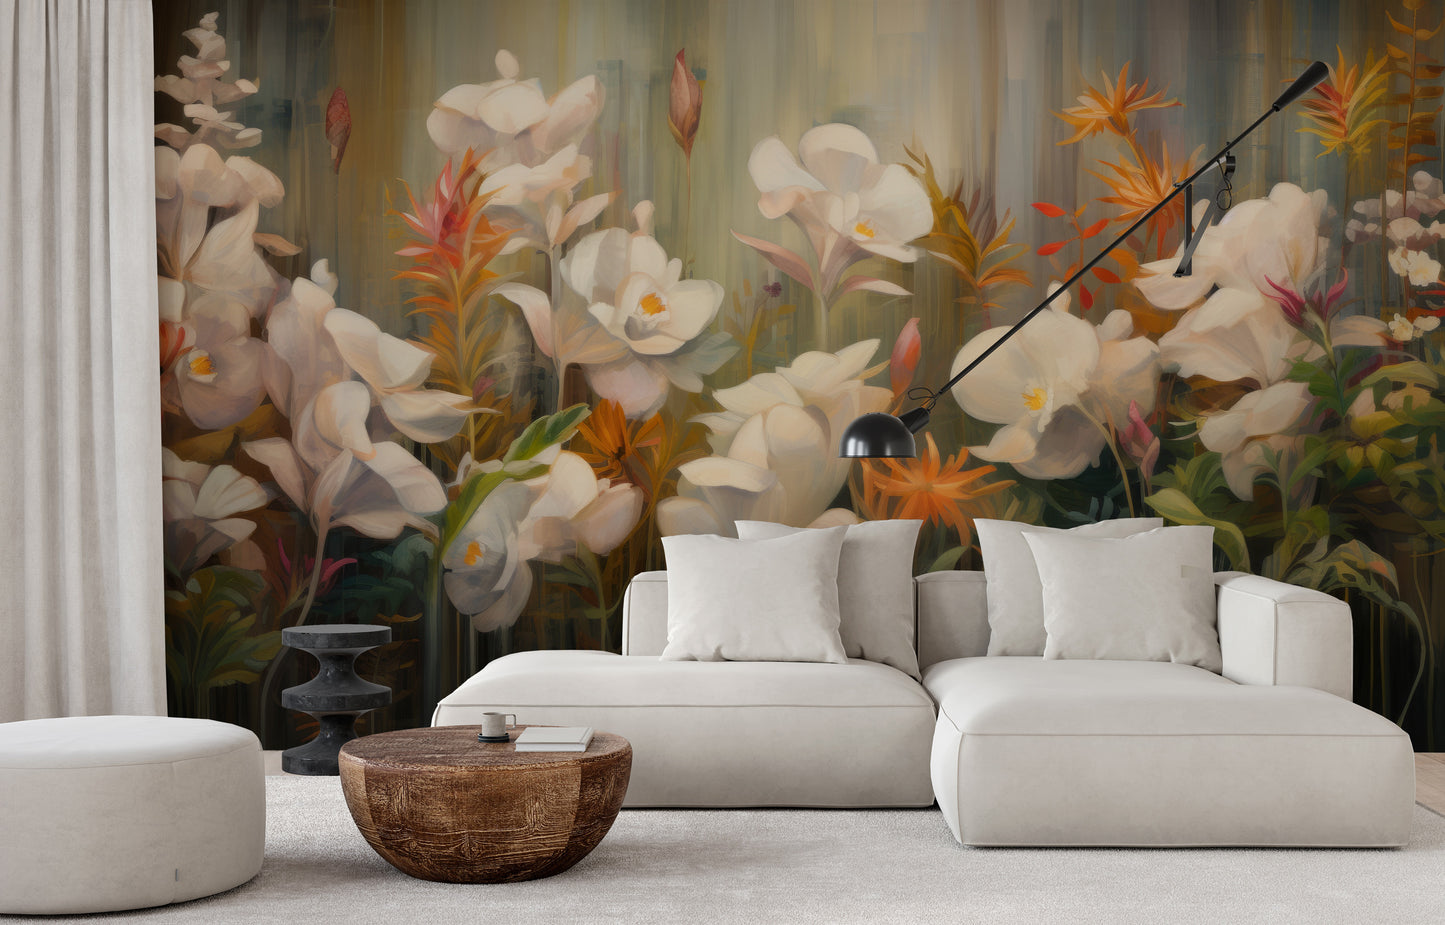 Fototapeta artystyczna o nazwie Rainforest Orchid Delight pokazana w aranżacji wnętrza.